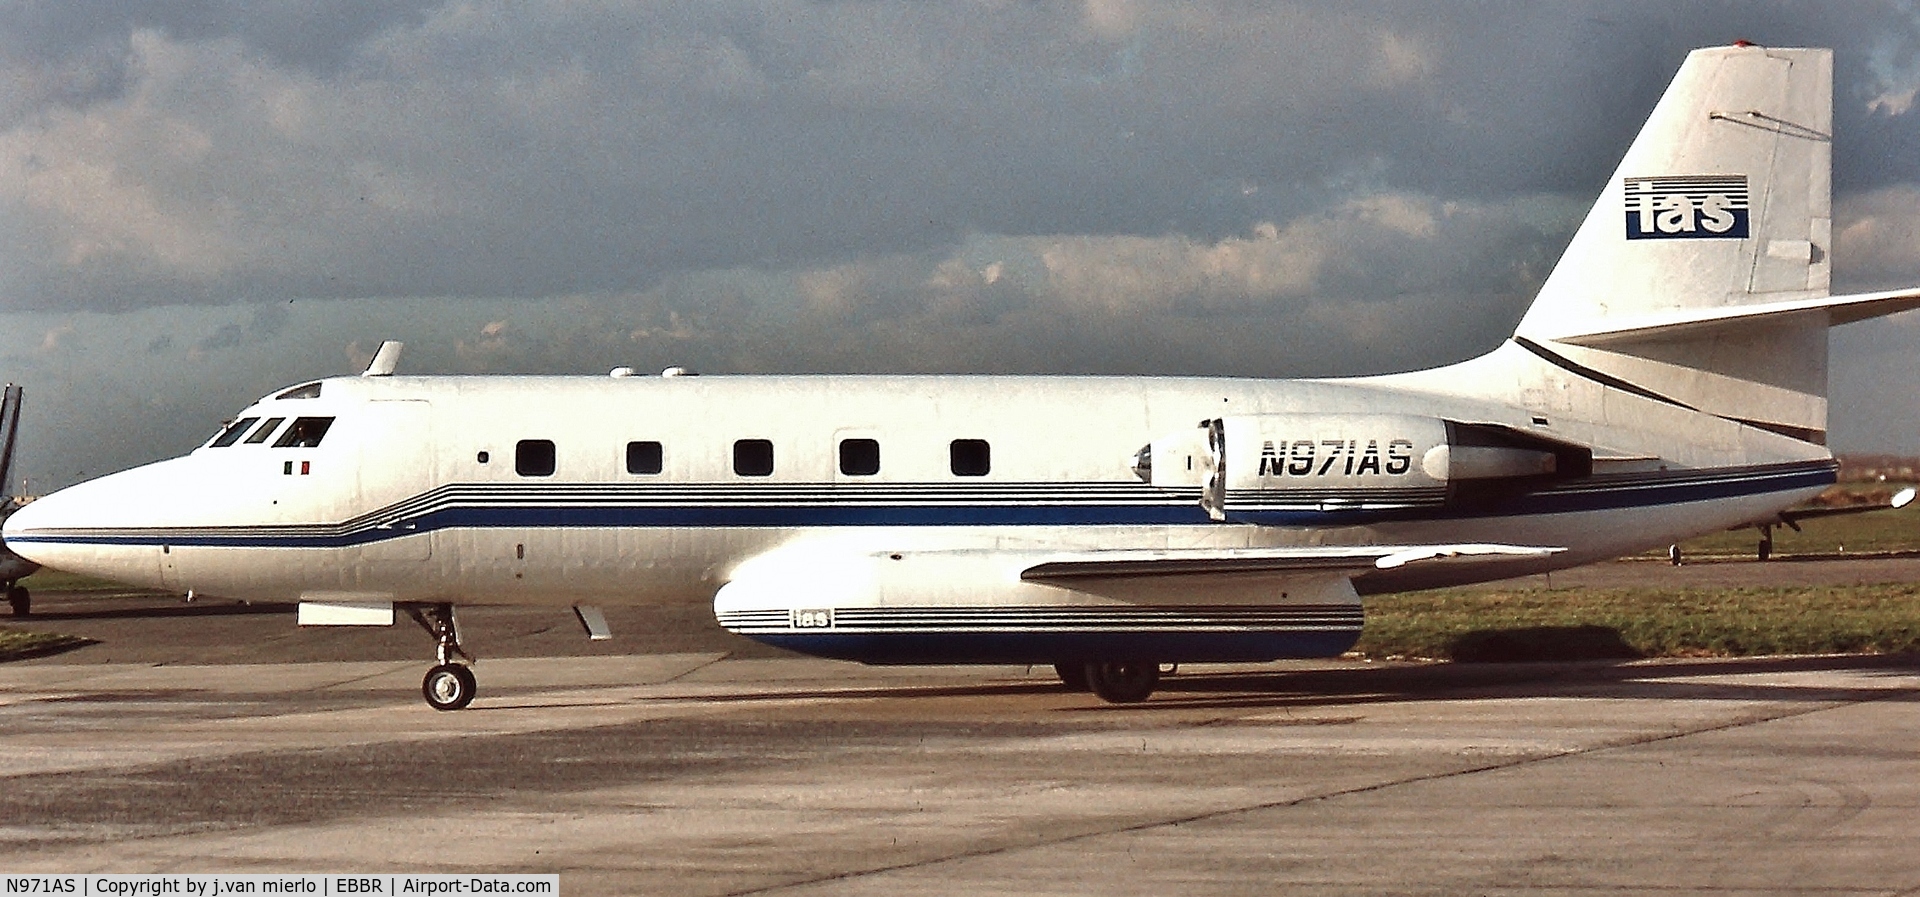 N971AS, 1961 Lockheed L-1329 Jetstar 731 C/N 5007, Brussels'90s